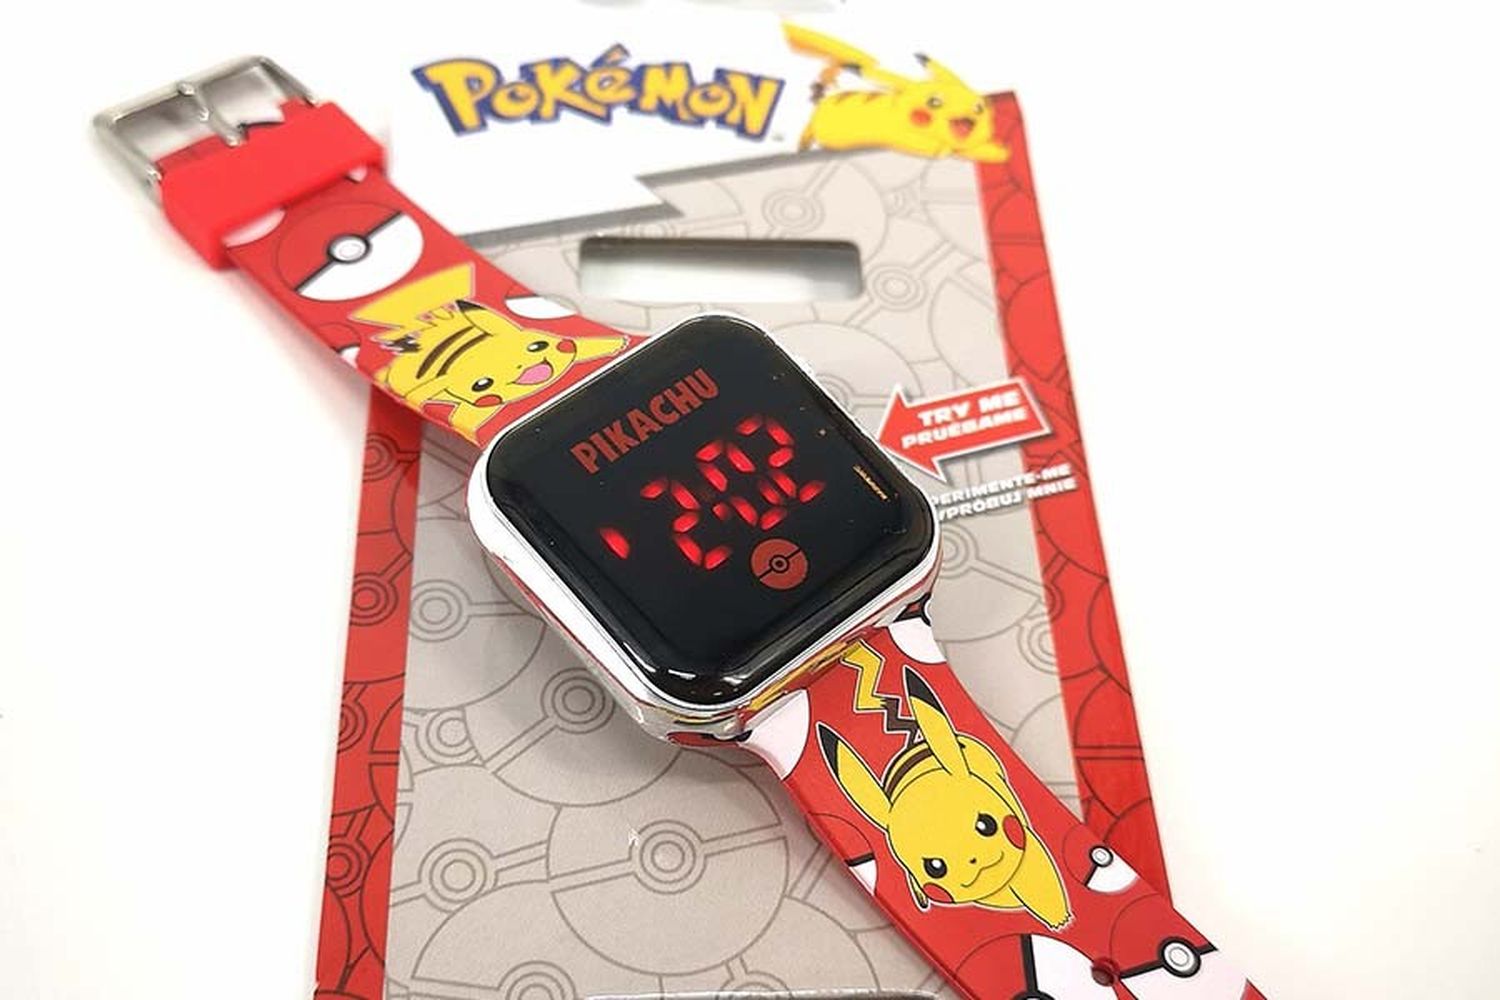 Pokémon - Horloge numérique Pikachu